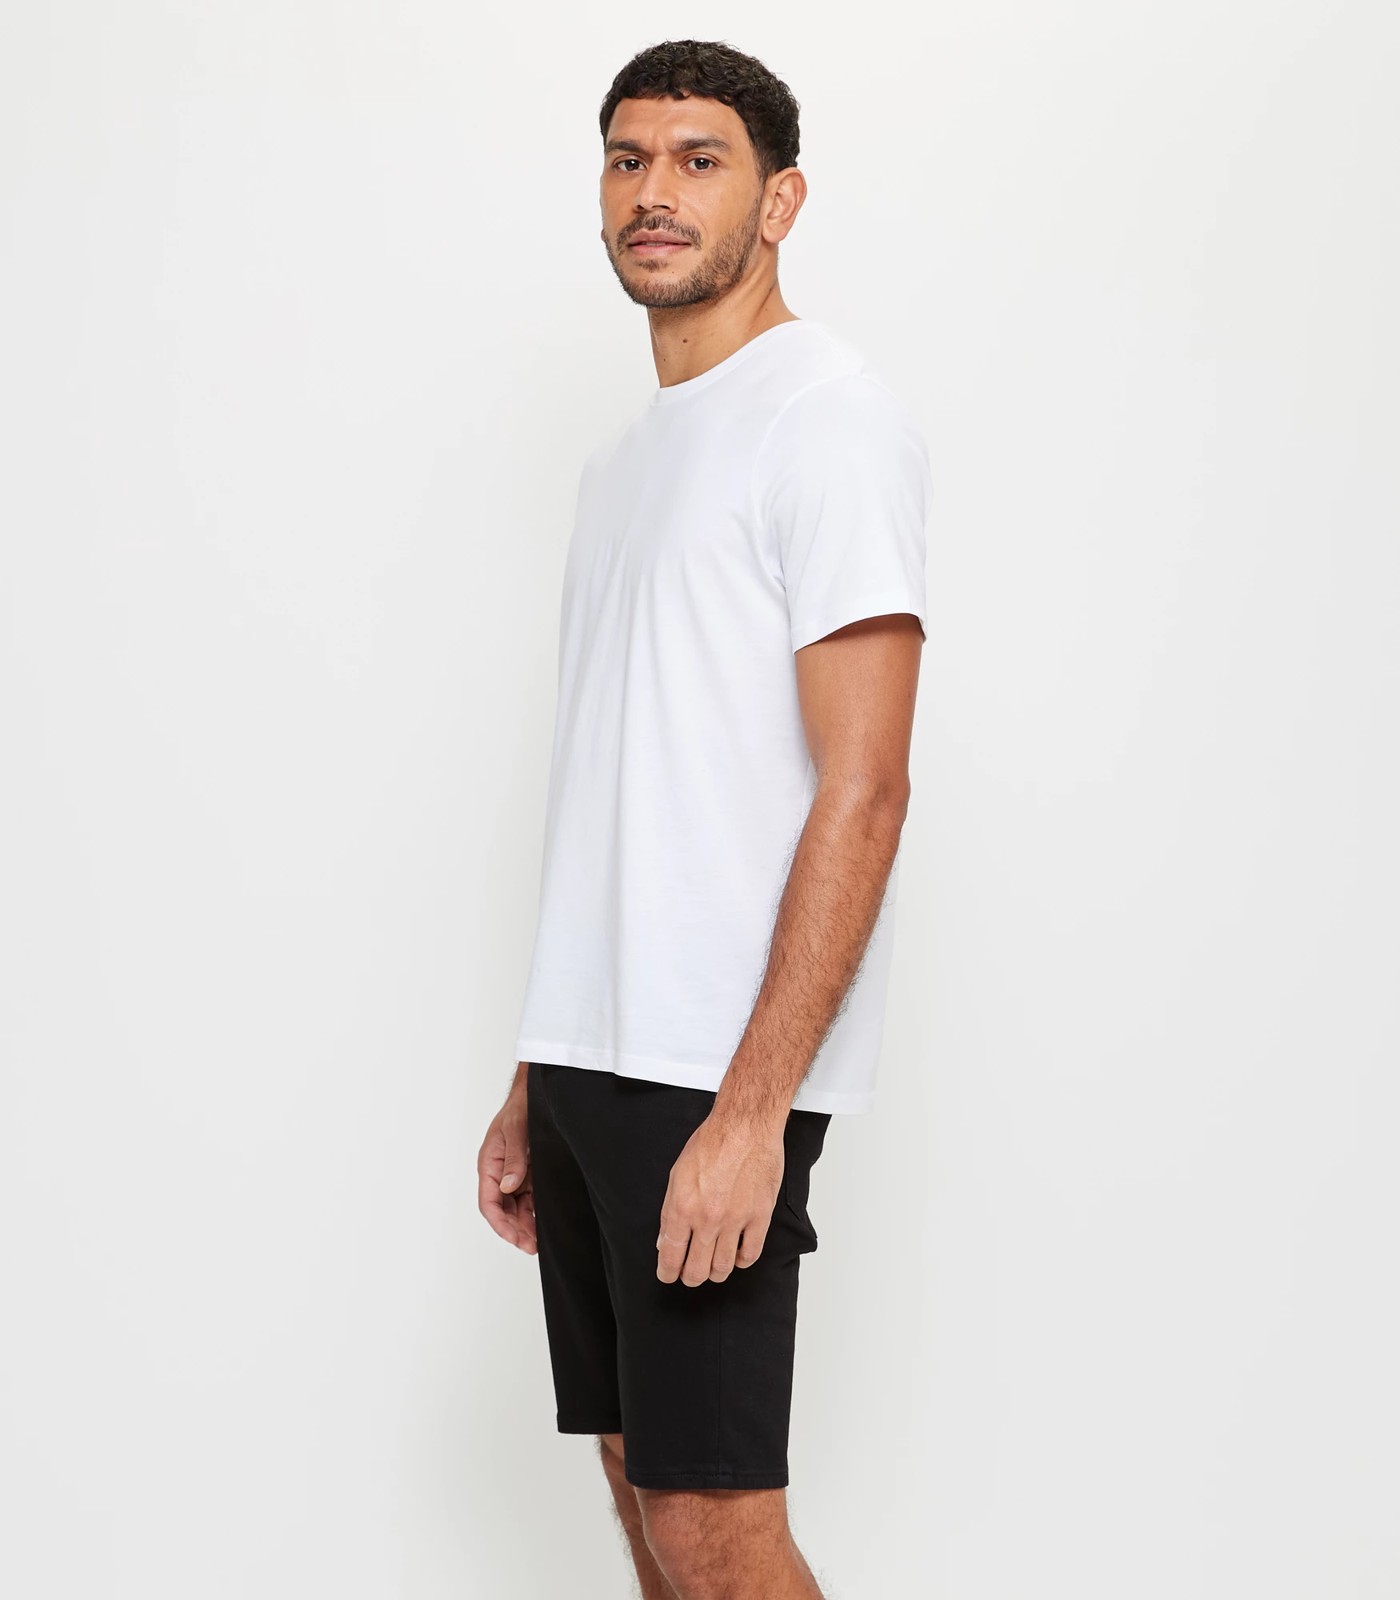 Slim Denim Shorts | Target Australia